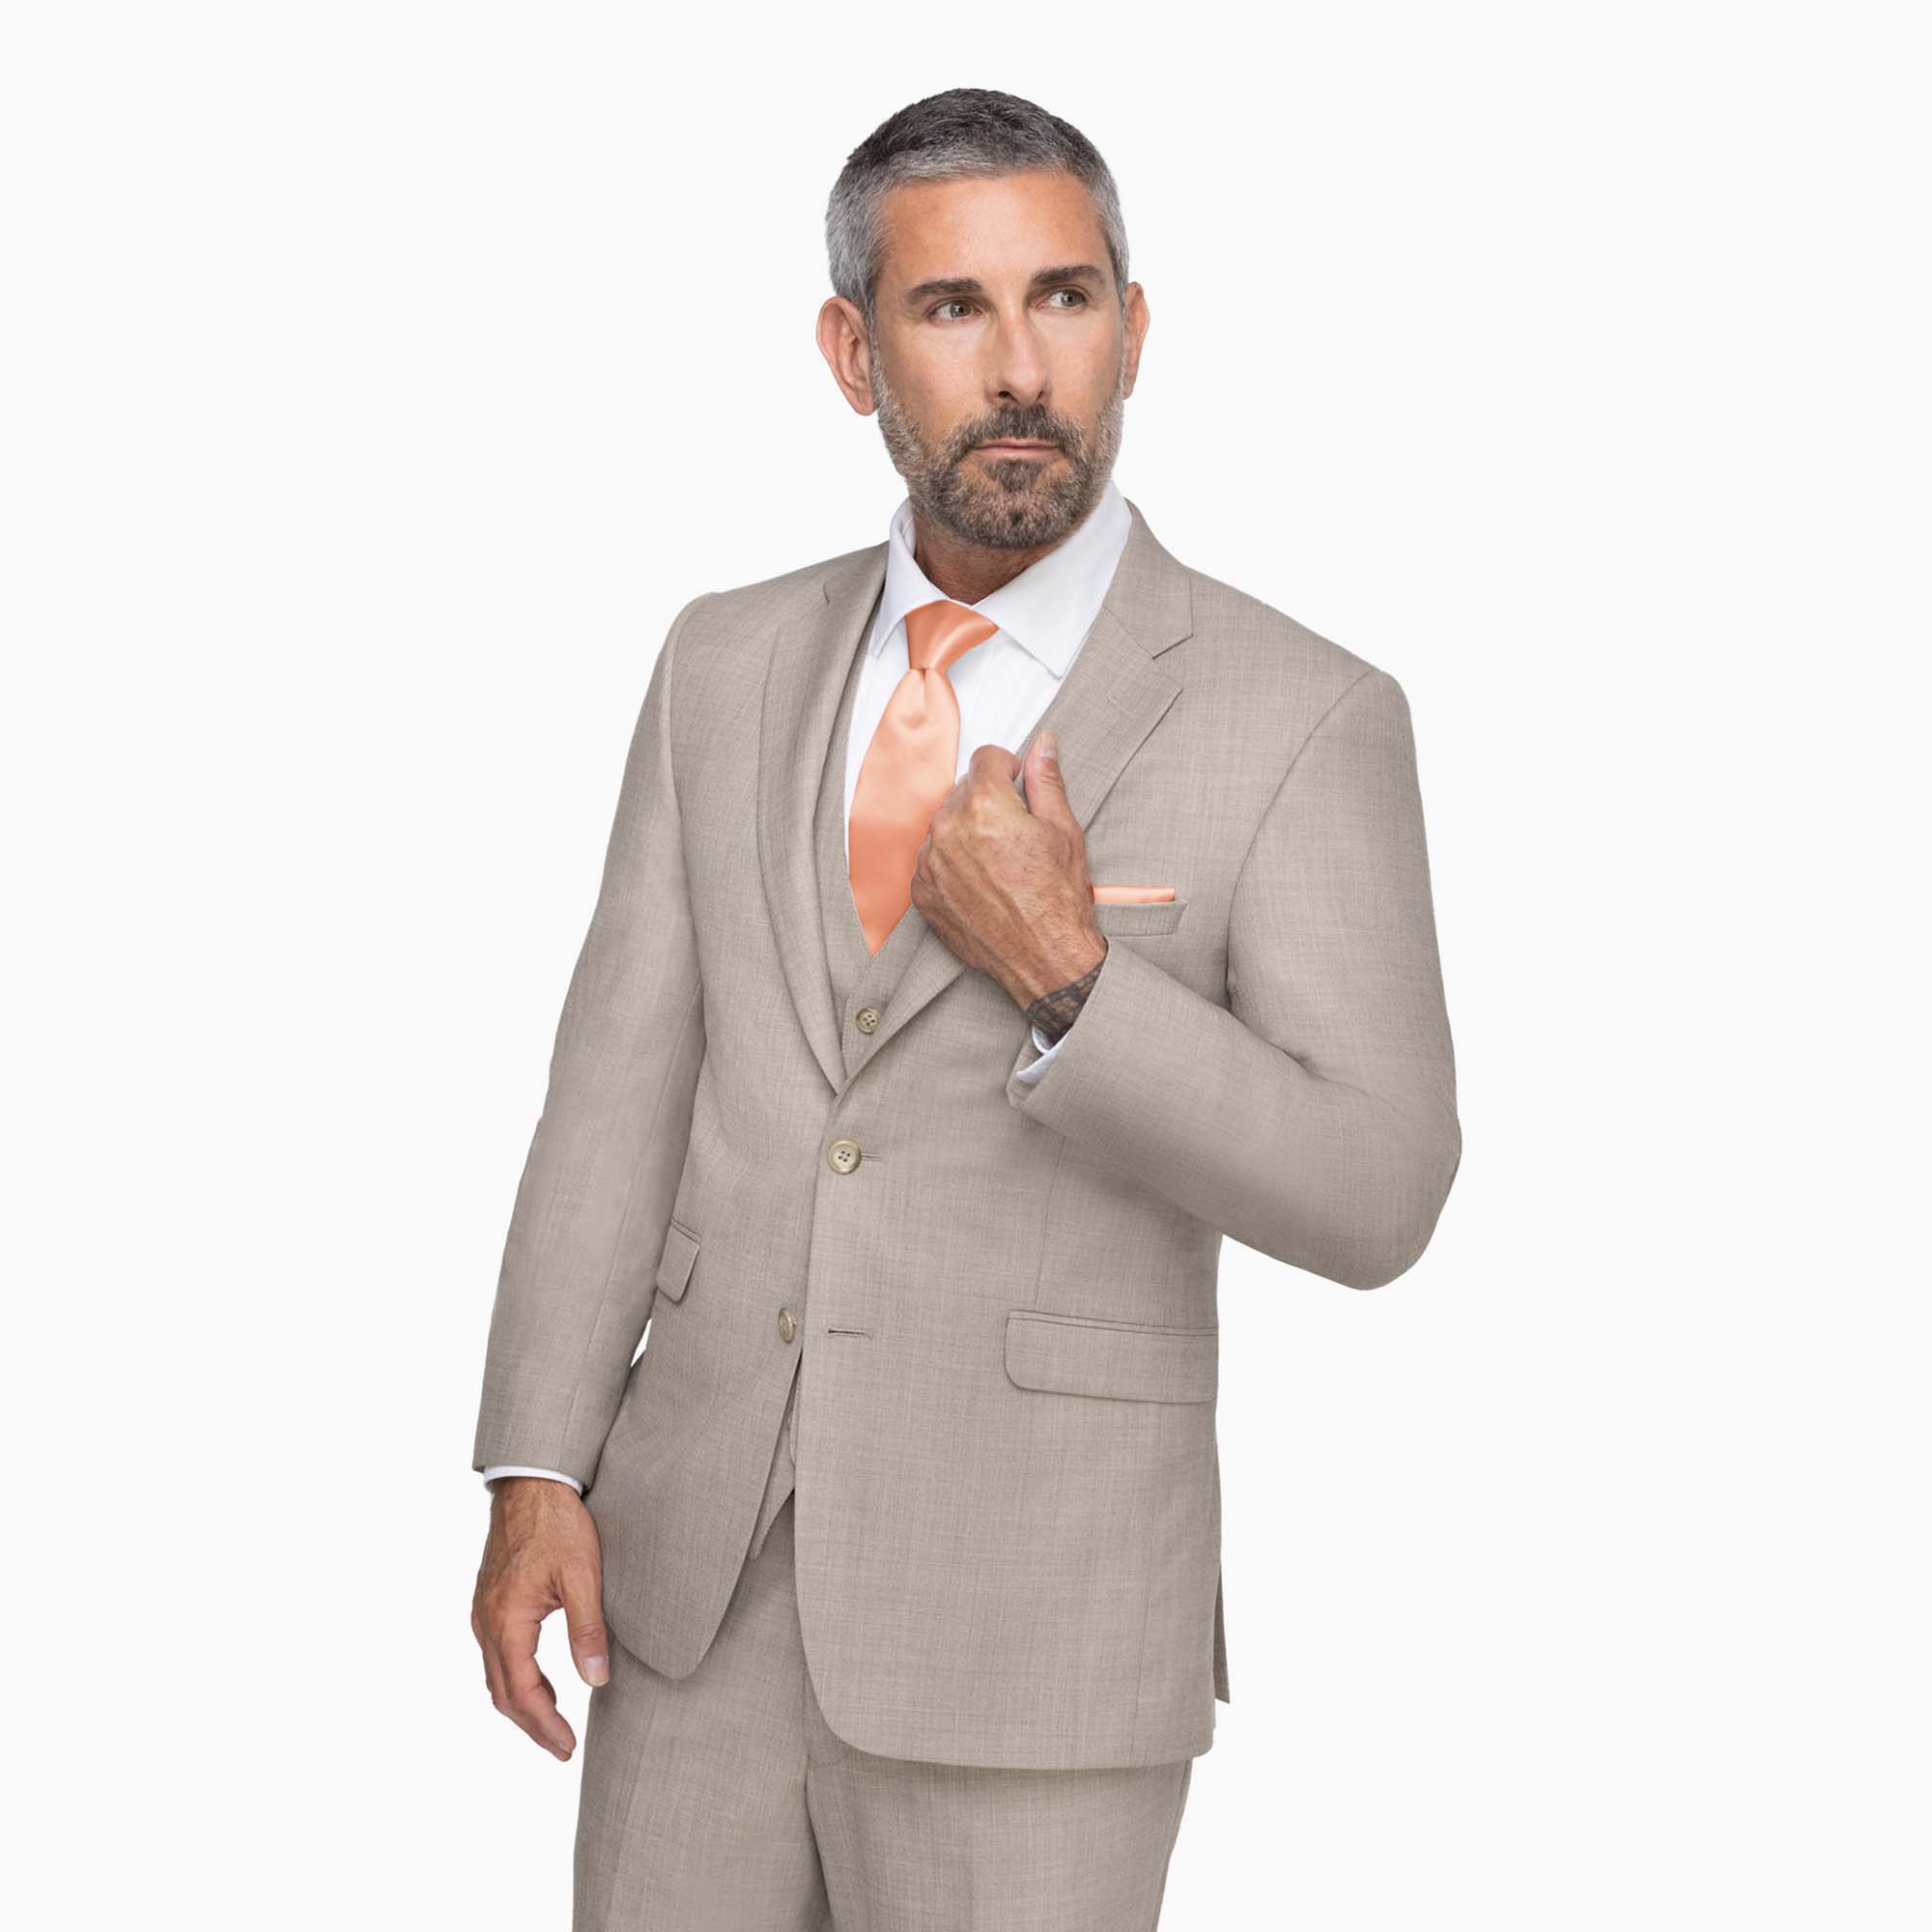 Allure Beige notch lapel Suit on a male model